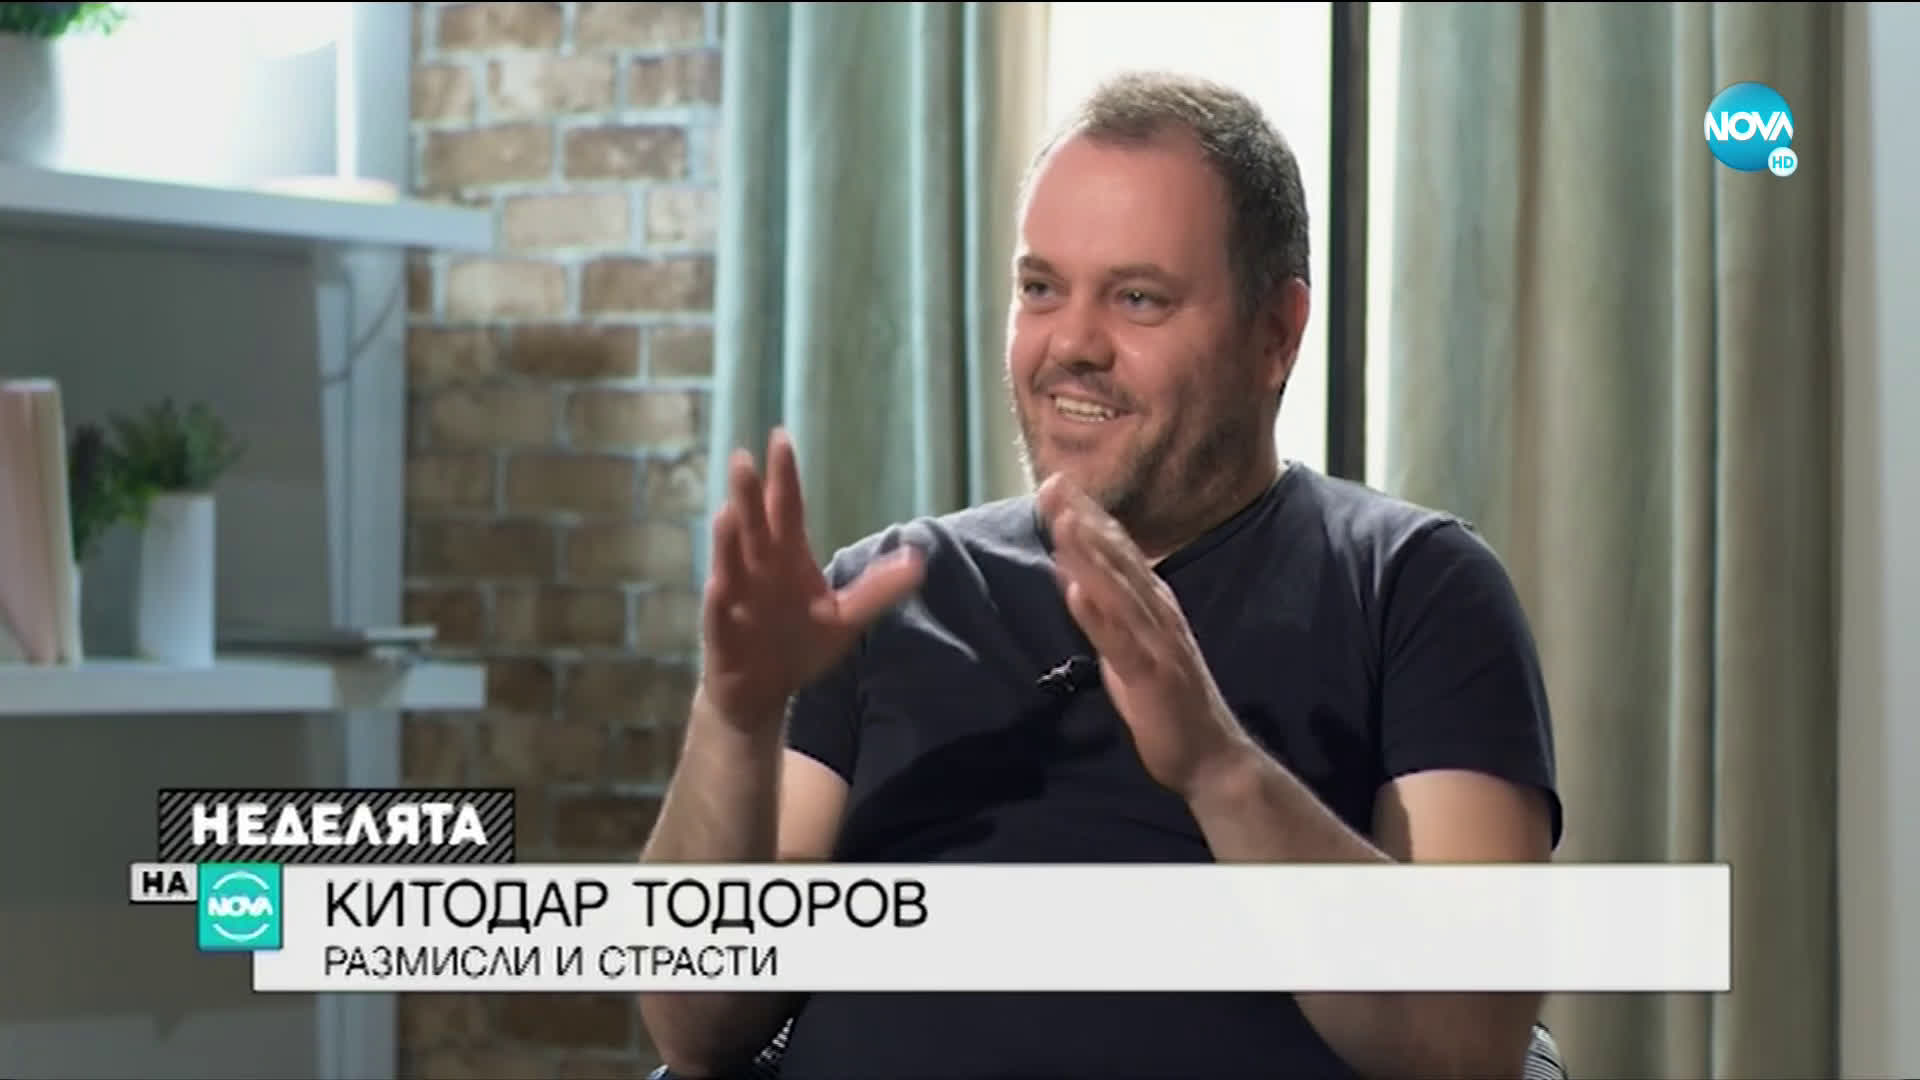 Китодар Тодоров: Надявам се да съм добър човек, добър християнин, добър баща и съпруг